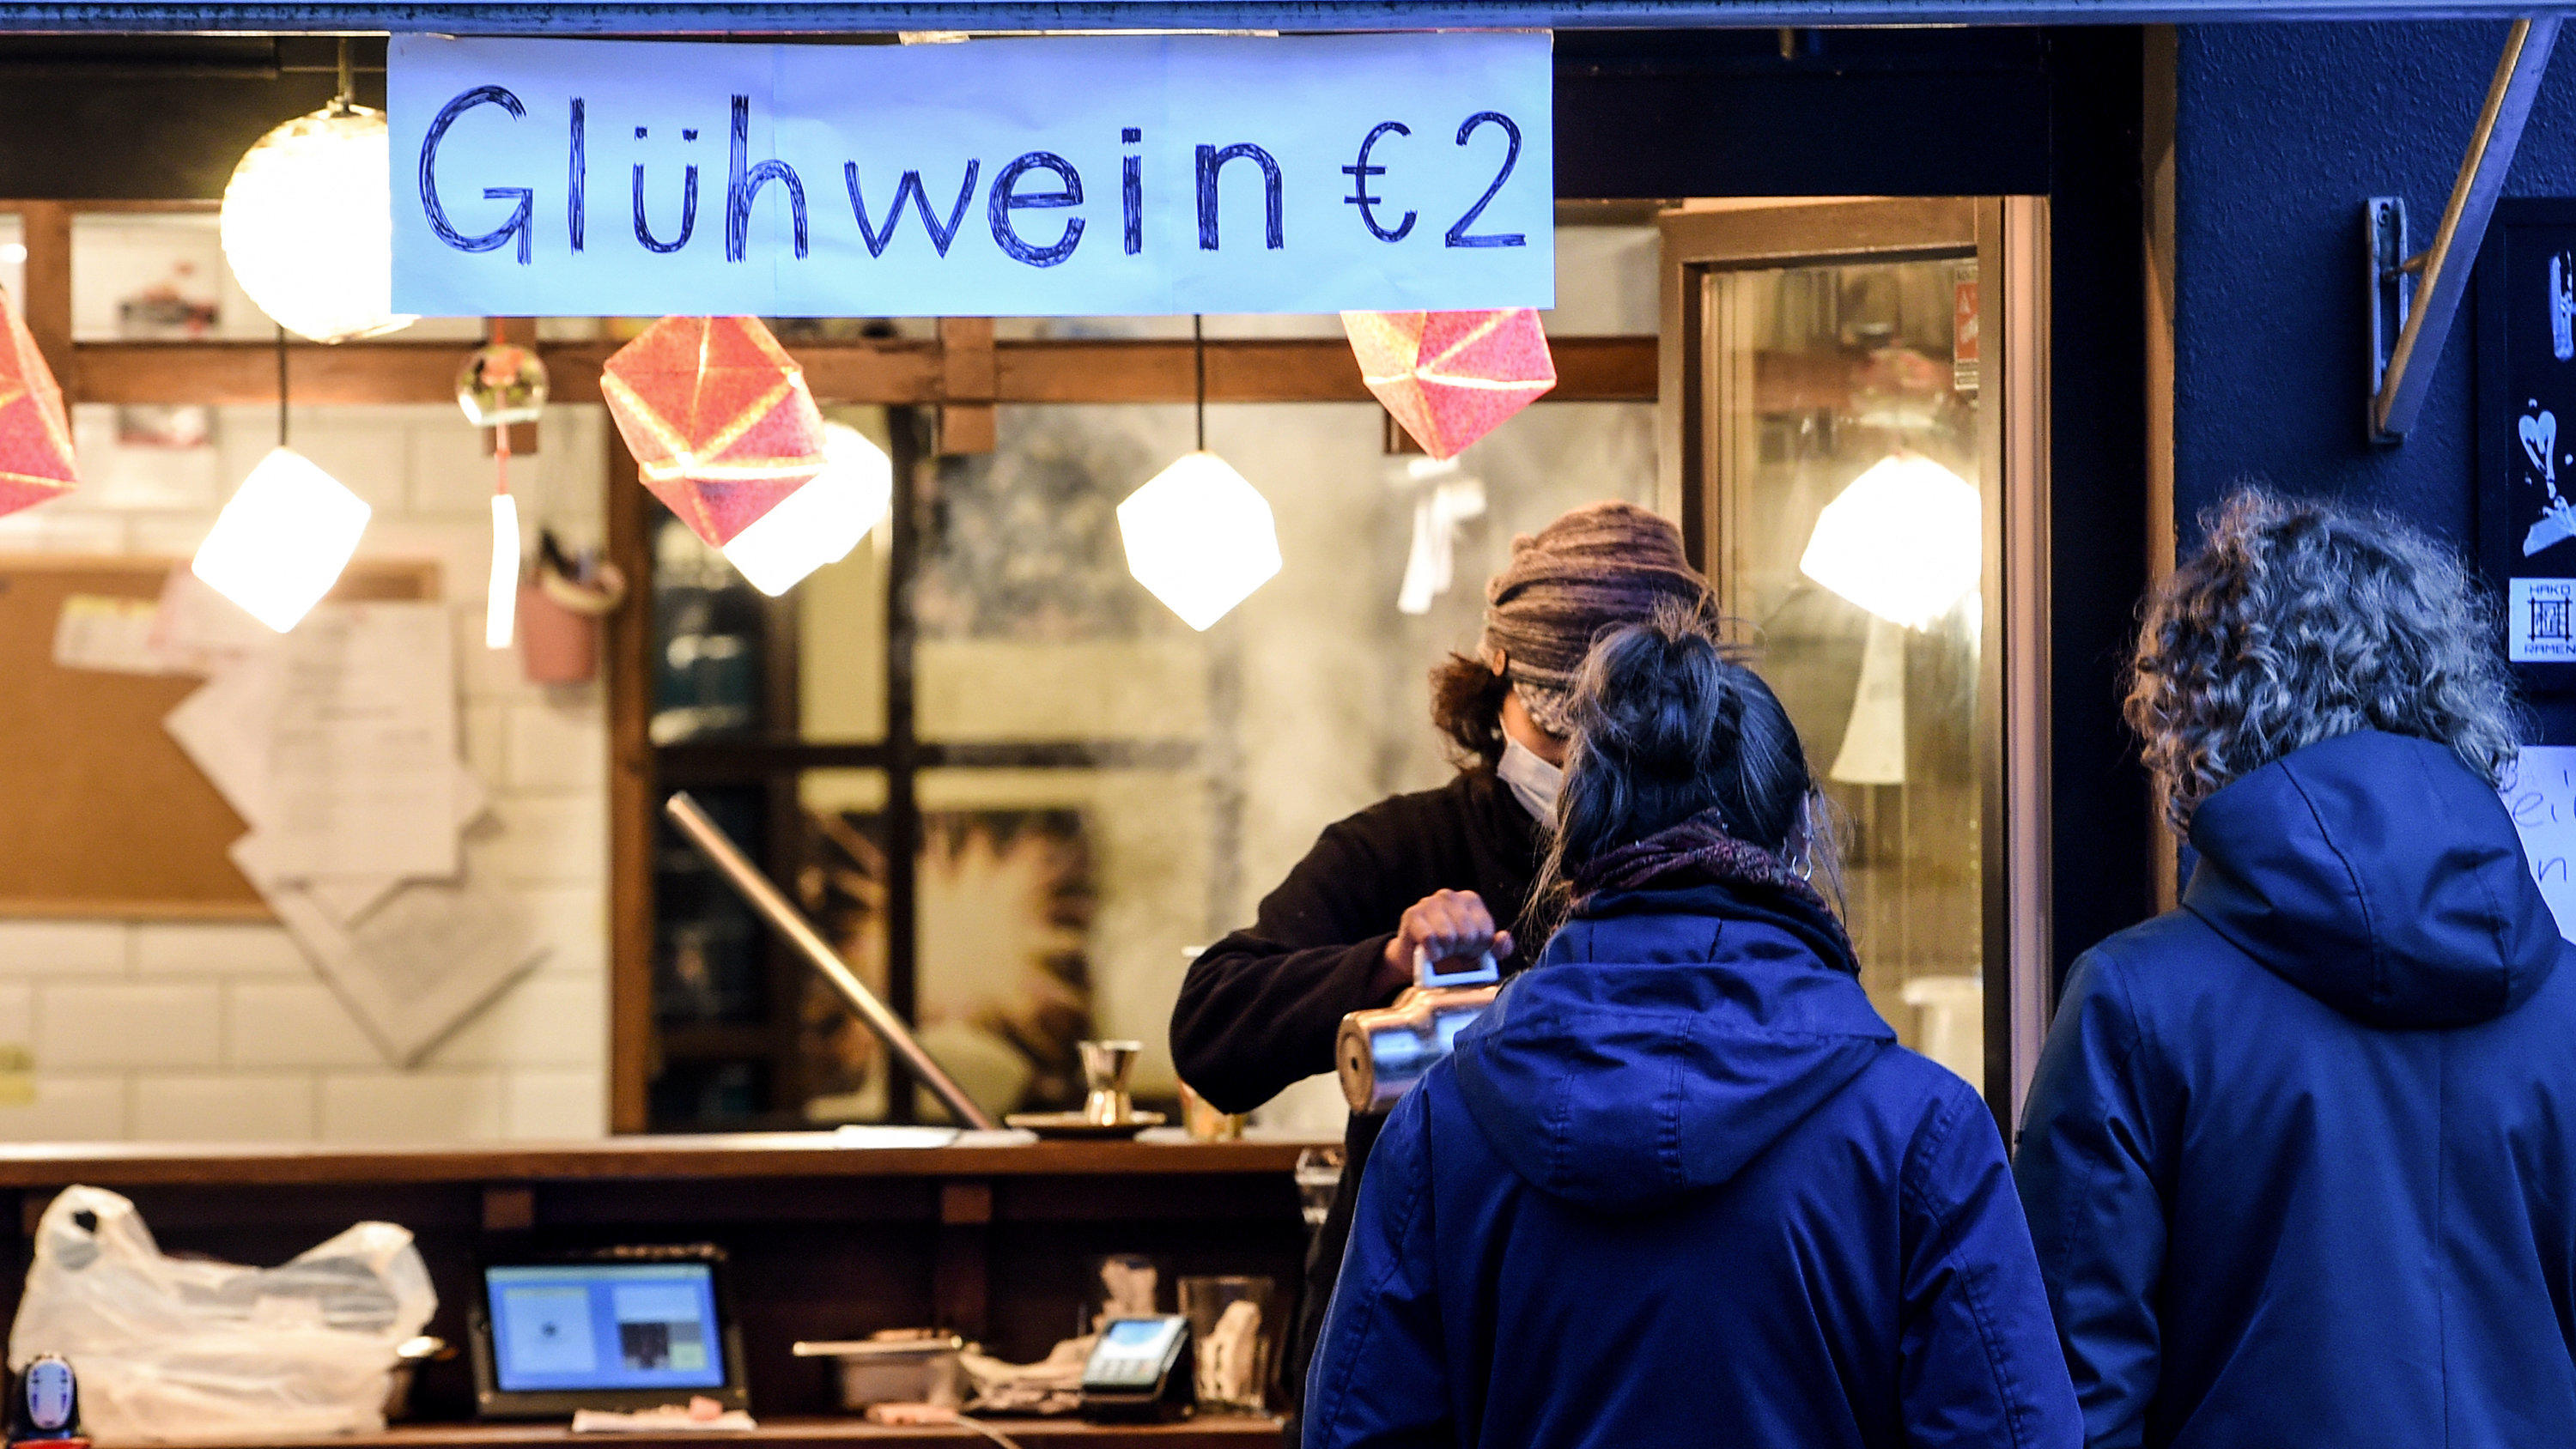 08.11.2020, Berlin: Ein Restaurant bietet Glühwein To Go an. Personen warten davor auf ihre Bestellung. Bund und Länder haben für den Monat November einen Teil-Lockdown beschlossen. Foto: Kira Hofmann/dpa-Zentralbild/dpa +++ dpa-Bildfunk +++